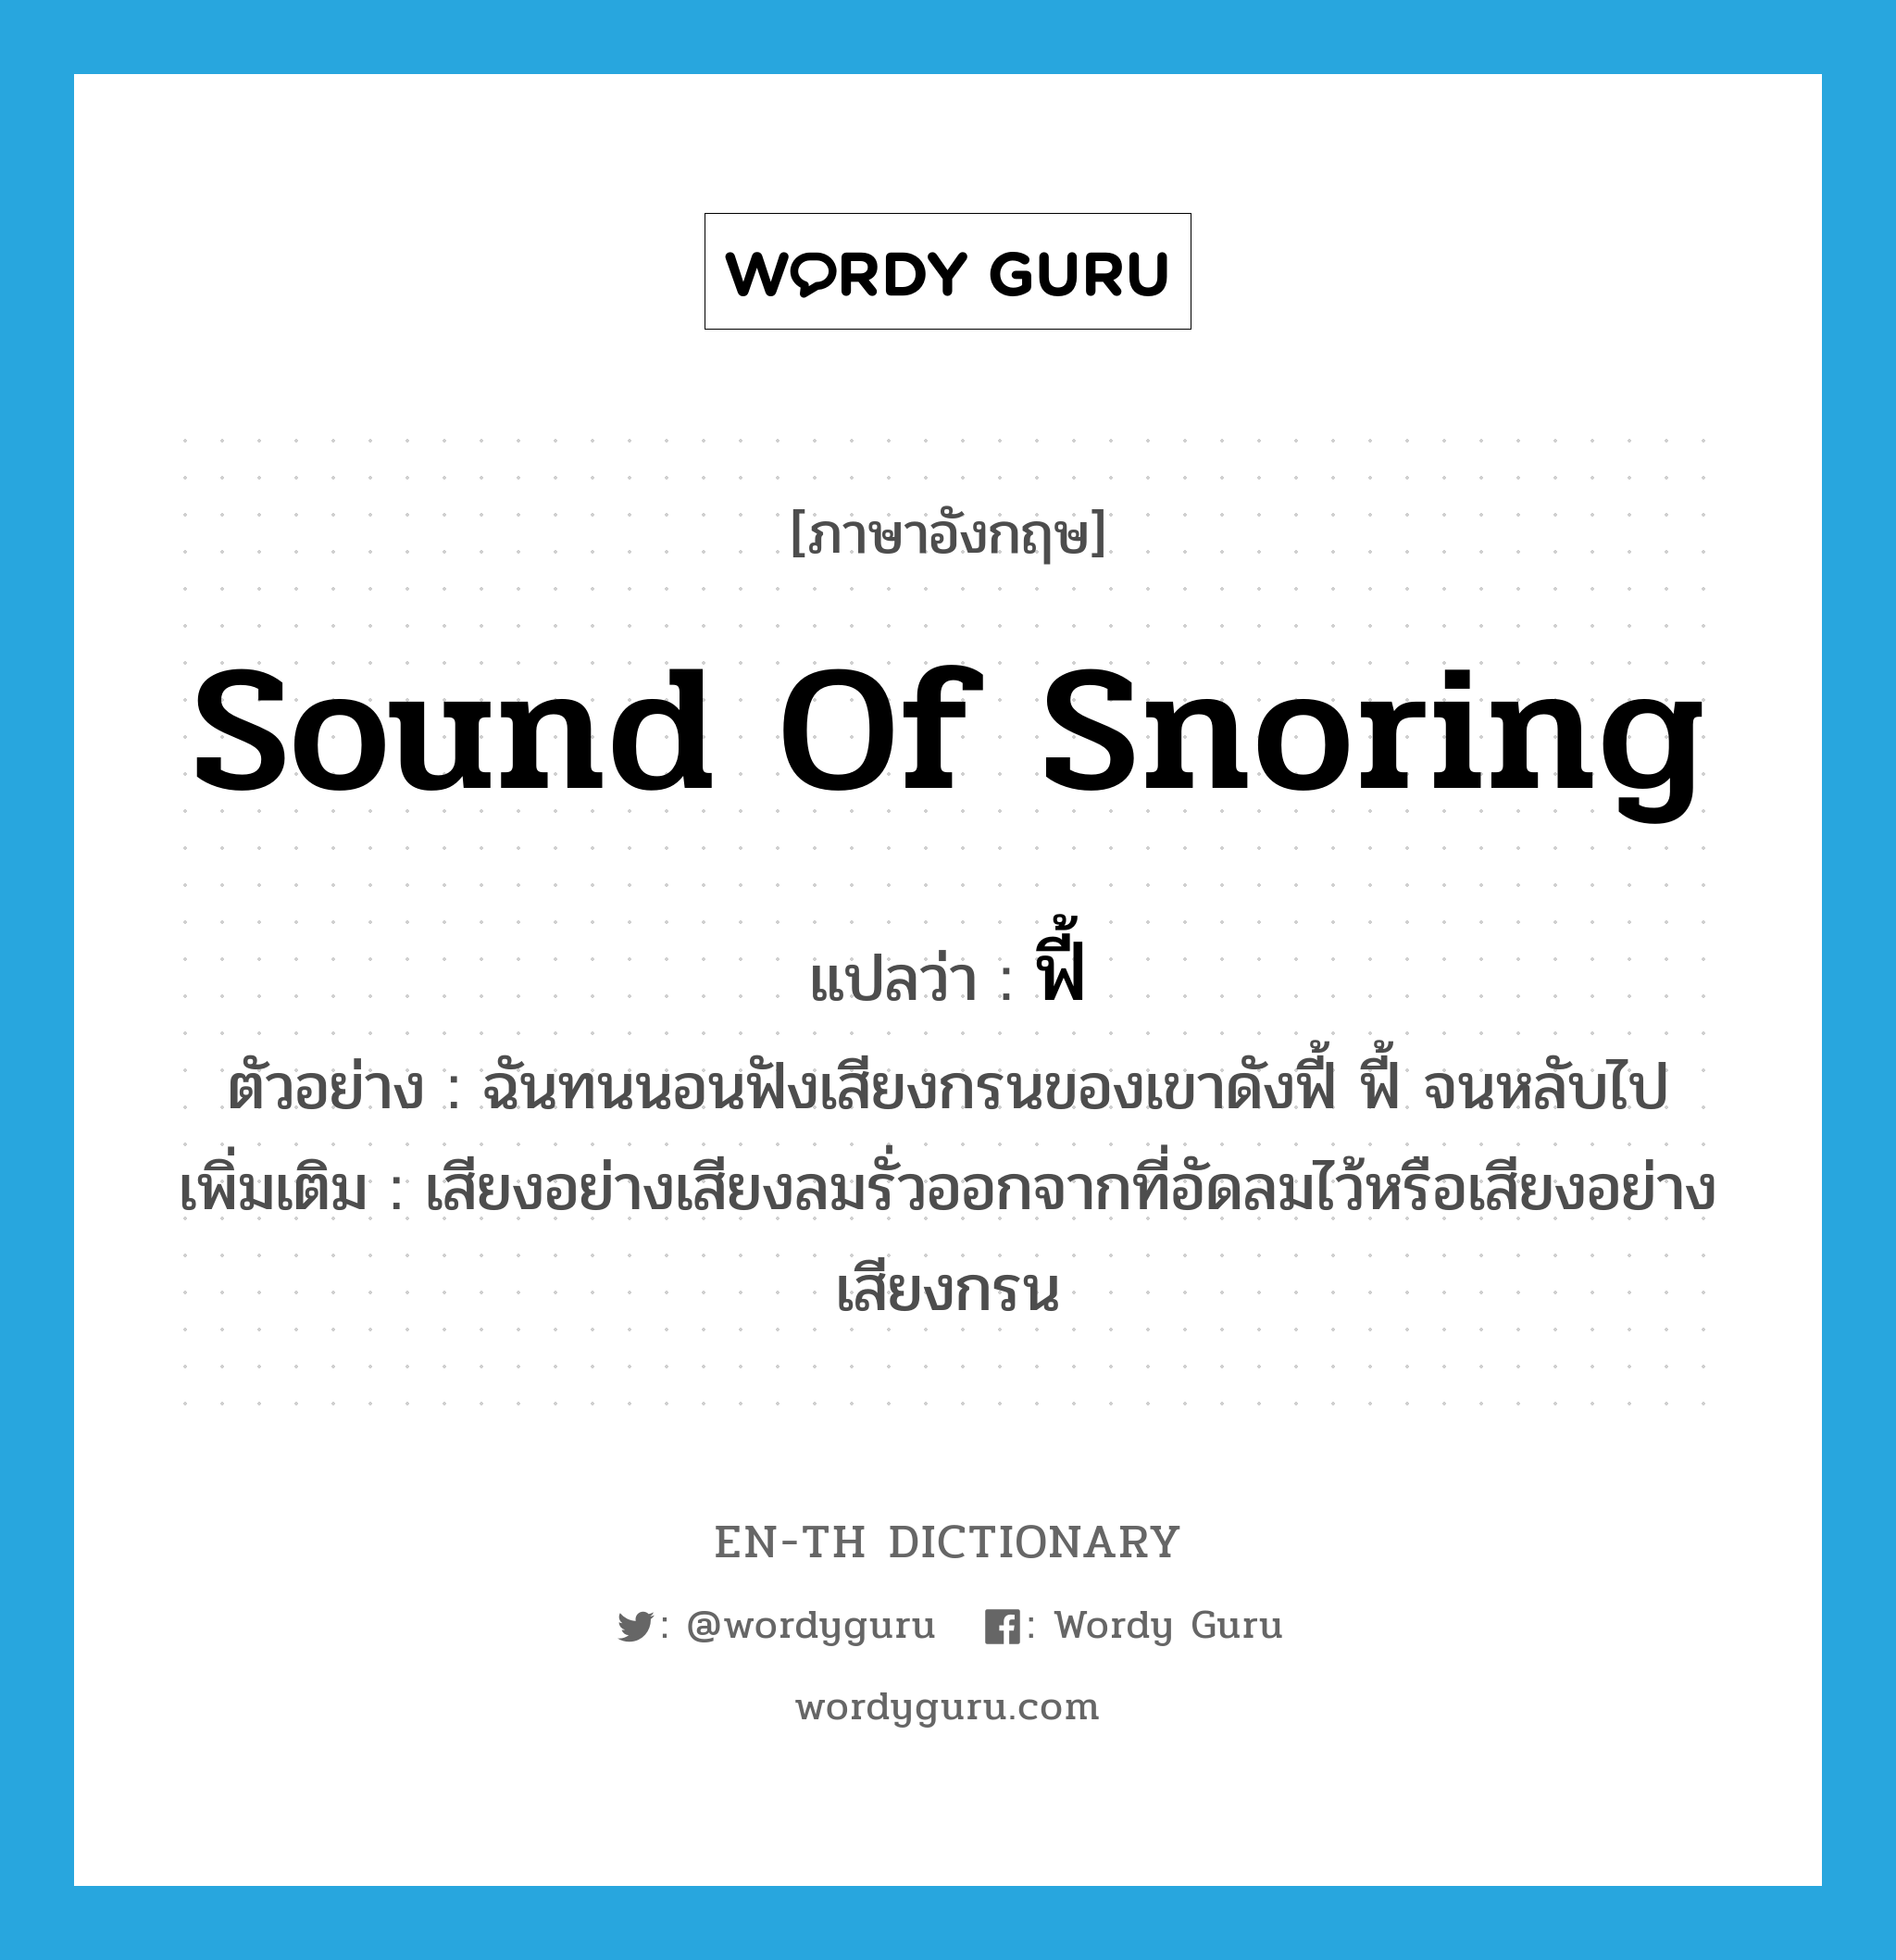 sound of snoring แปลว่า?, คำศัพท์ภาษาอังกฤษ sound of snoring แปลว่า ฟี้ ประเภท ADV ตัวอย่าง ฉันทนนอนฟังเสียงกรนของเขาดังฟี้ ฟี้ จนหลับไป เพิ่มเติม เสียงอย่างเสียงลมรั่วออกจากที่อัดลมไว้หรือเสียงอย่างเสียงกรน หมวด ADV